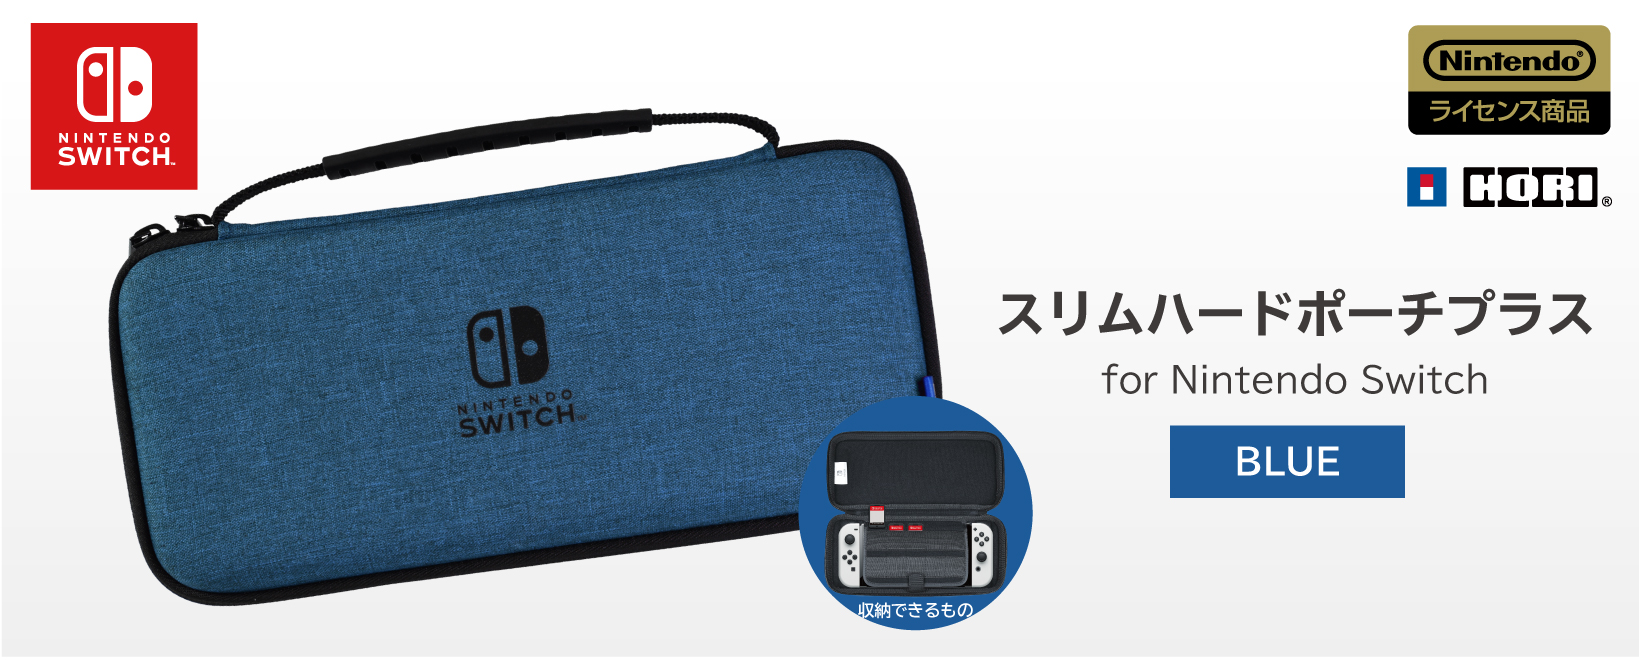 株式会社 HORI | スリムハードポーチ プラス for Nintendo Switch ブルー